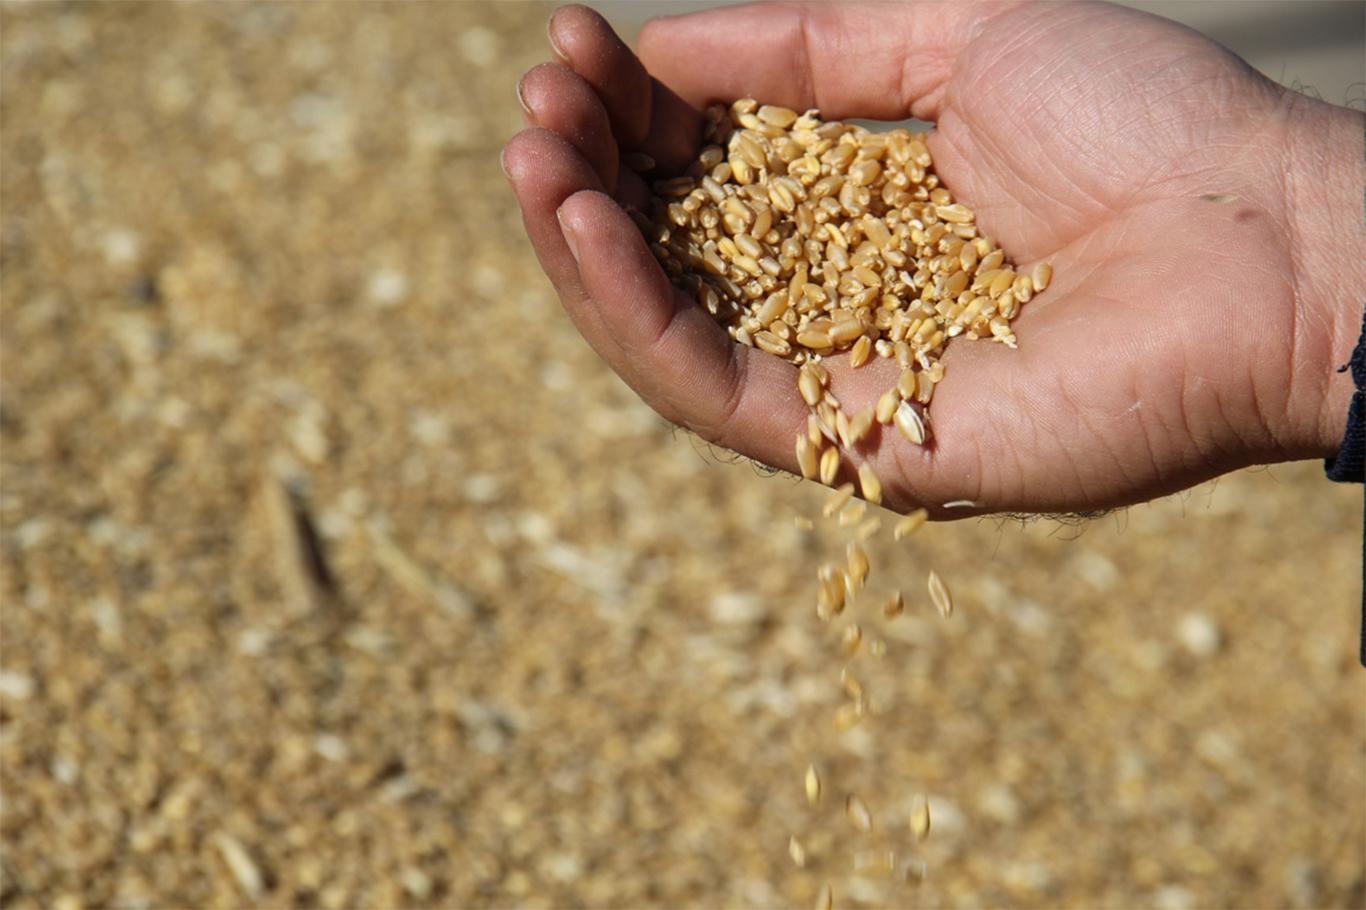 "Kuraklık devam ederse tüketiciler bu kadar ucuz buğday bulamaz"